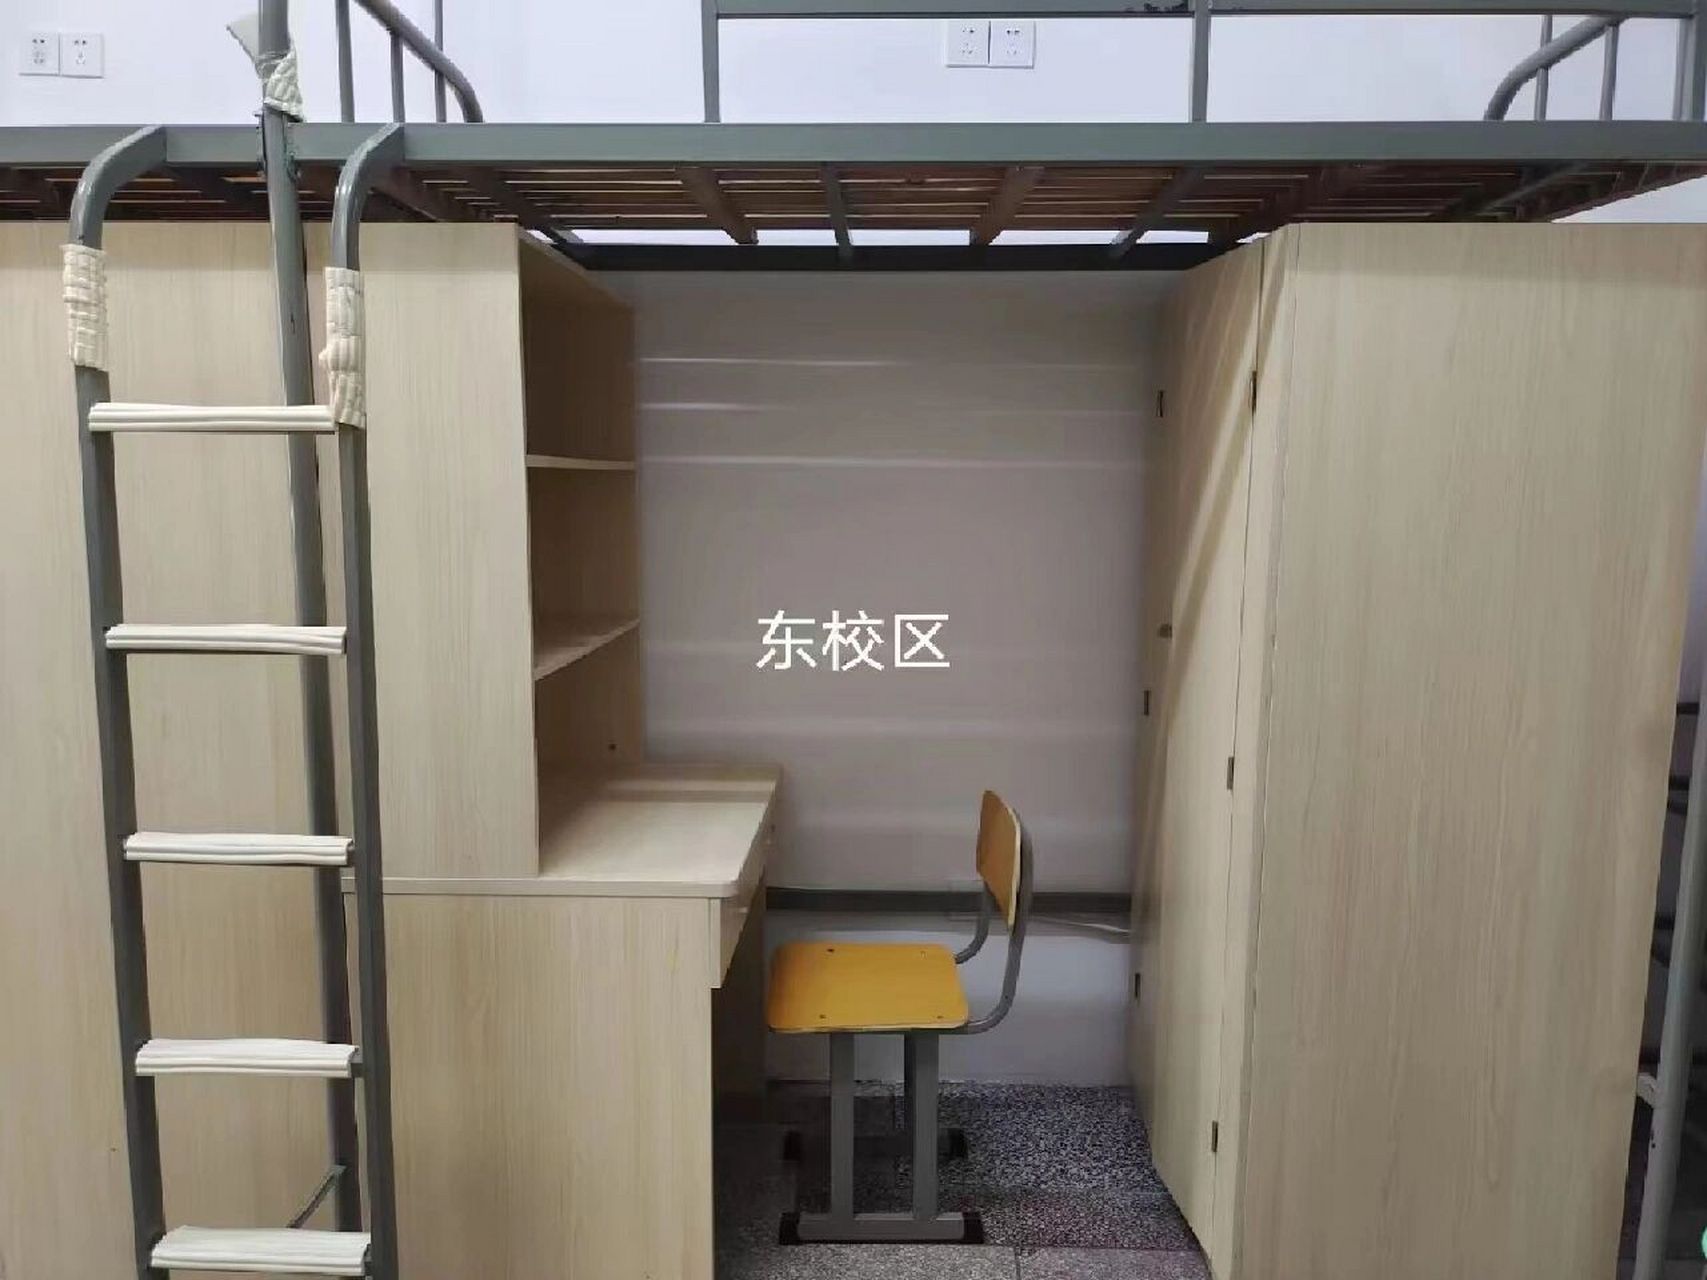 淮南师范学院的宿舍图片